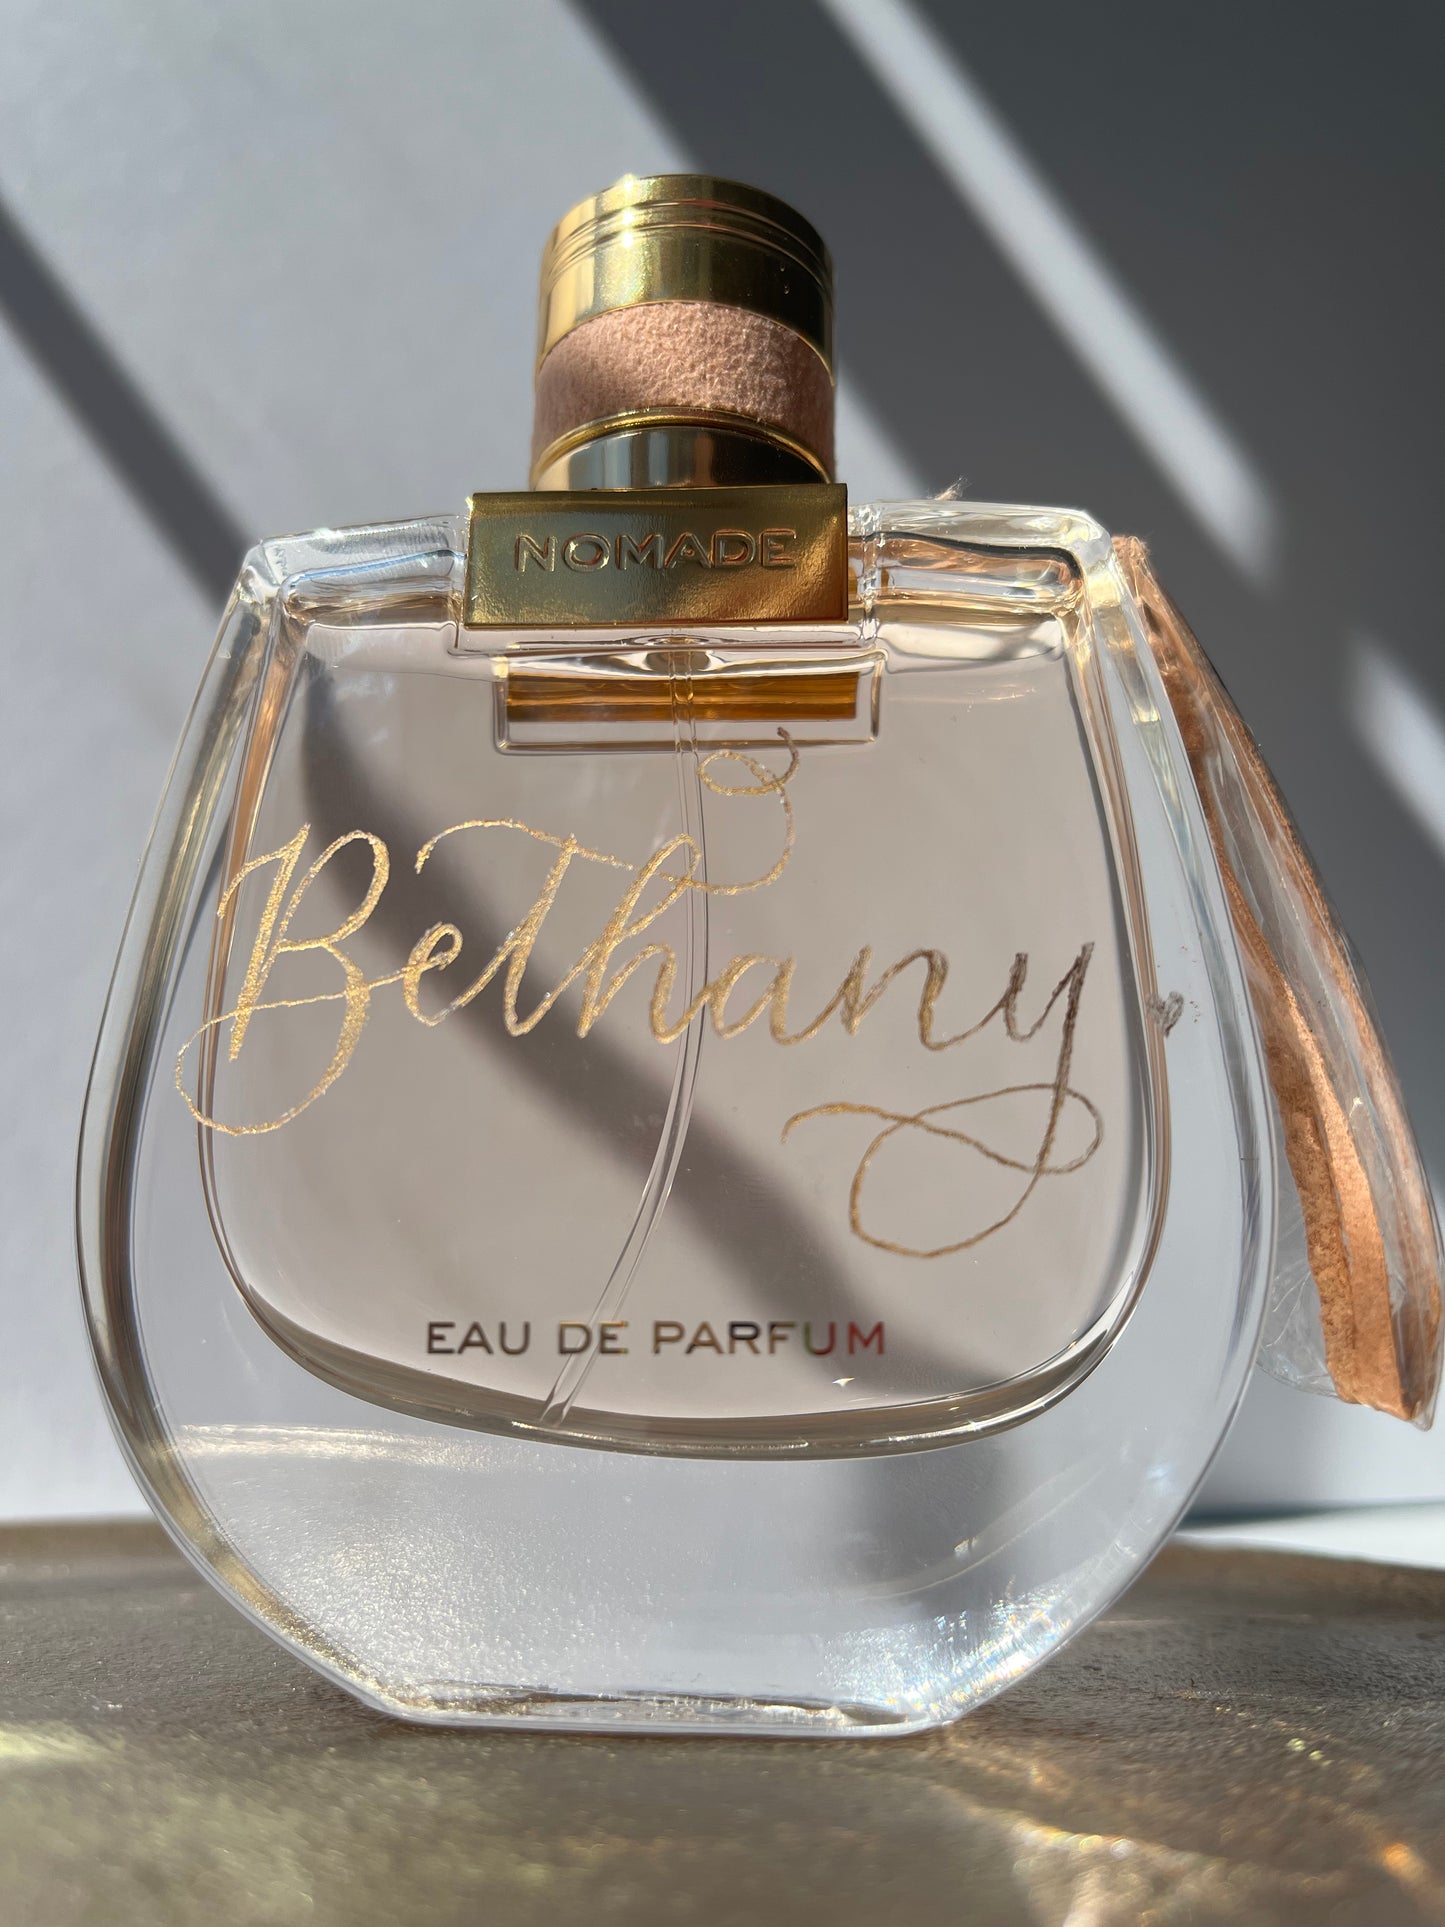 Engraving for perfume bottle